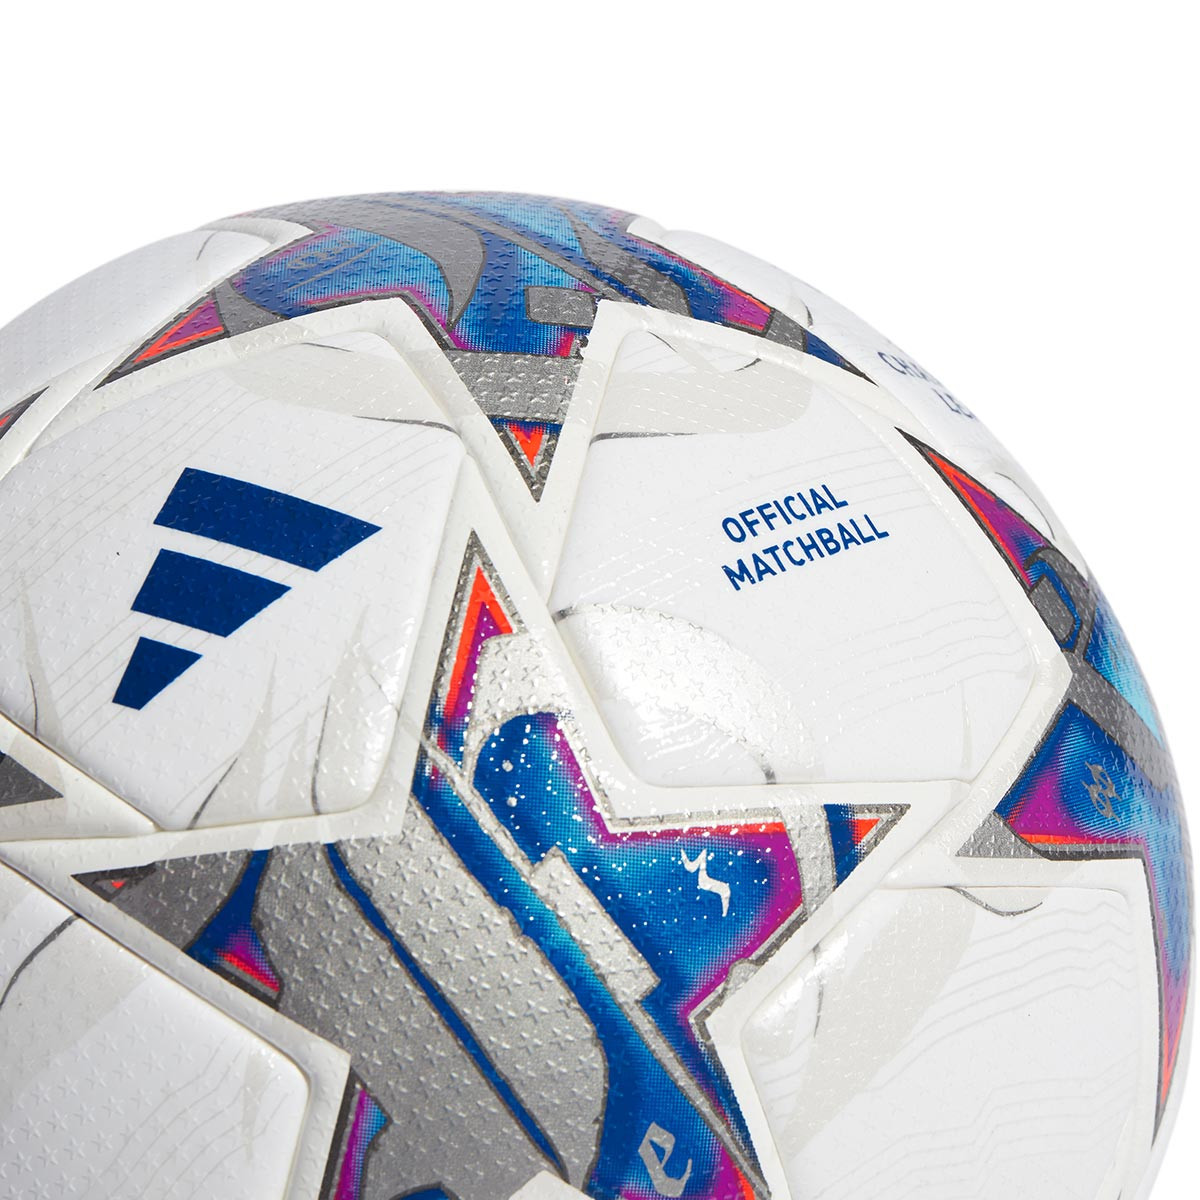 Adidas apresenta bola oficial da UEFA Champions League 2022/23